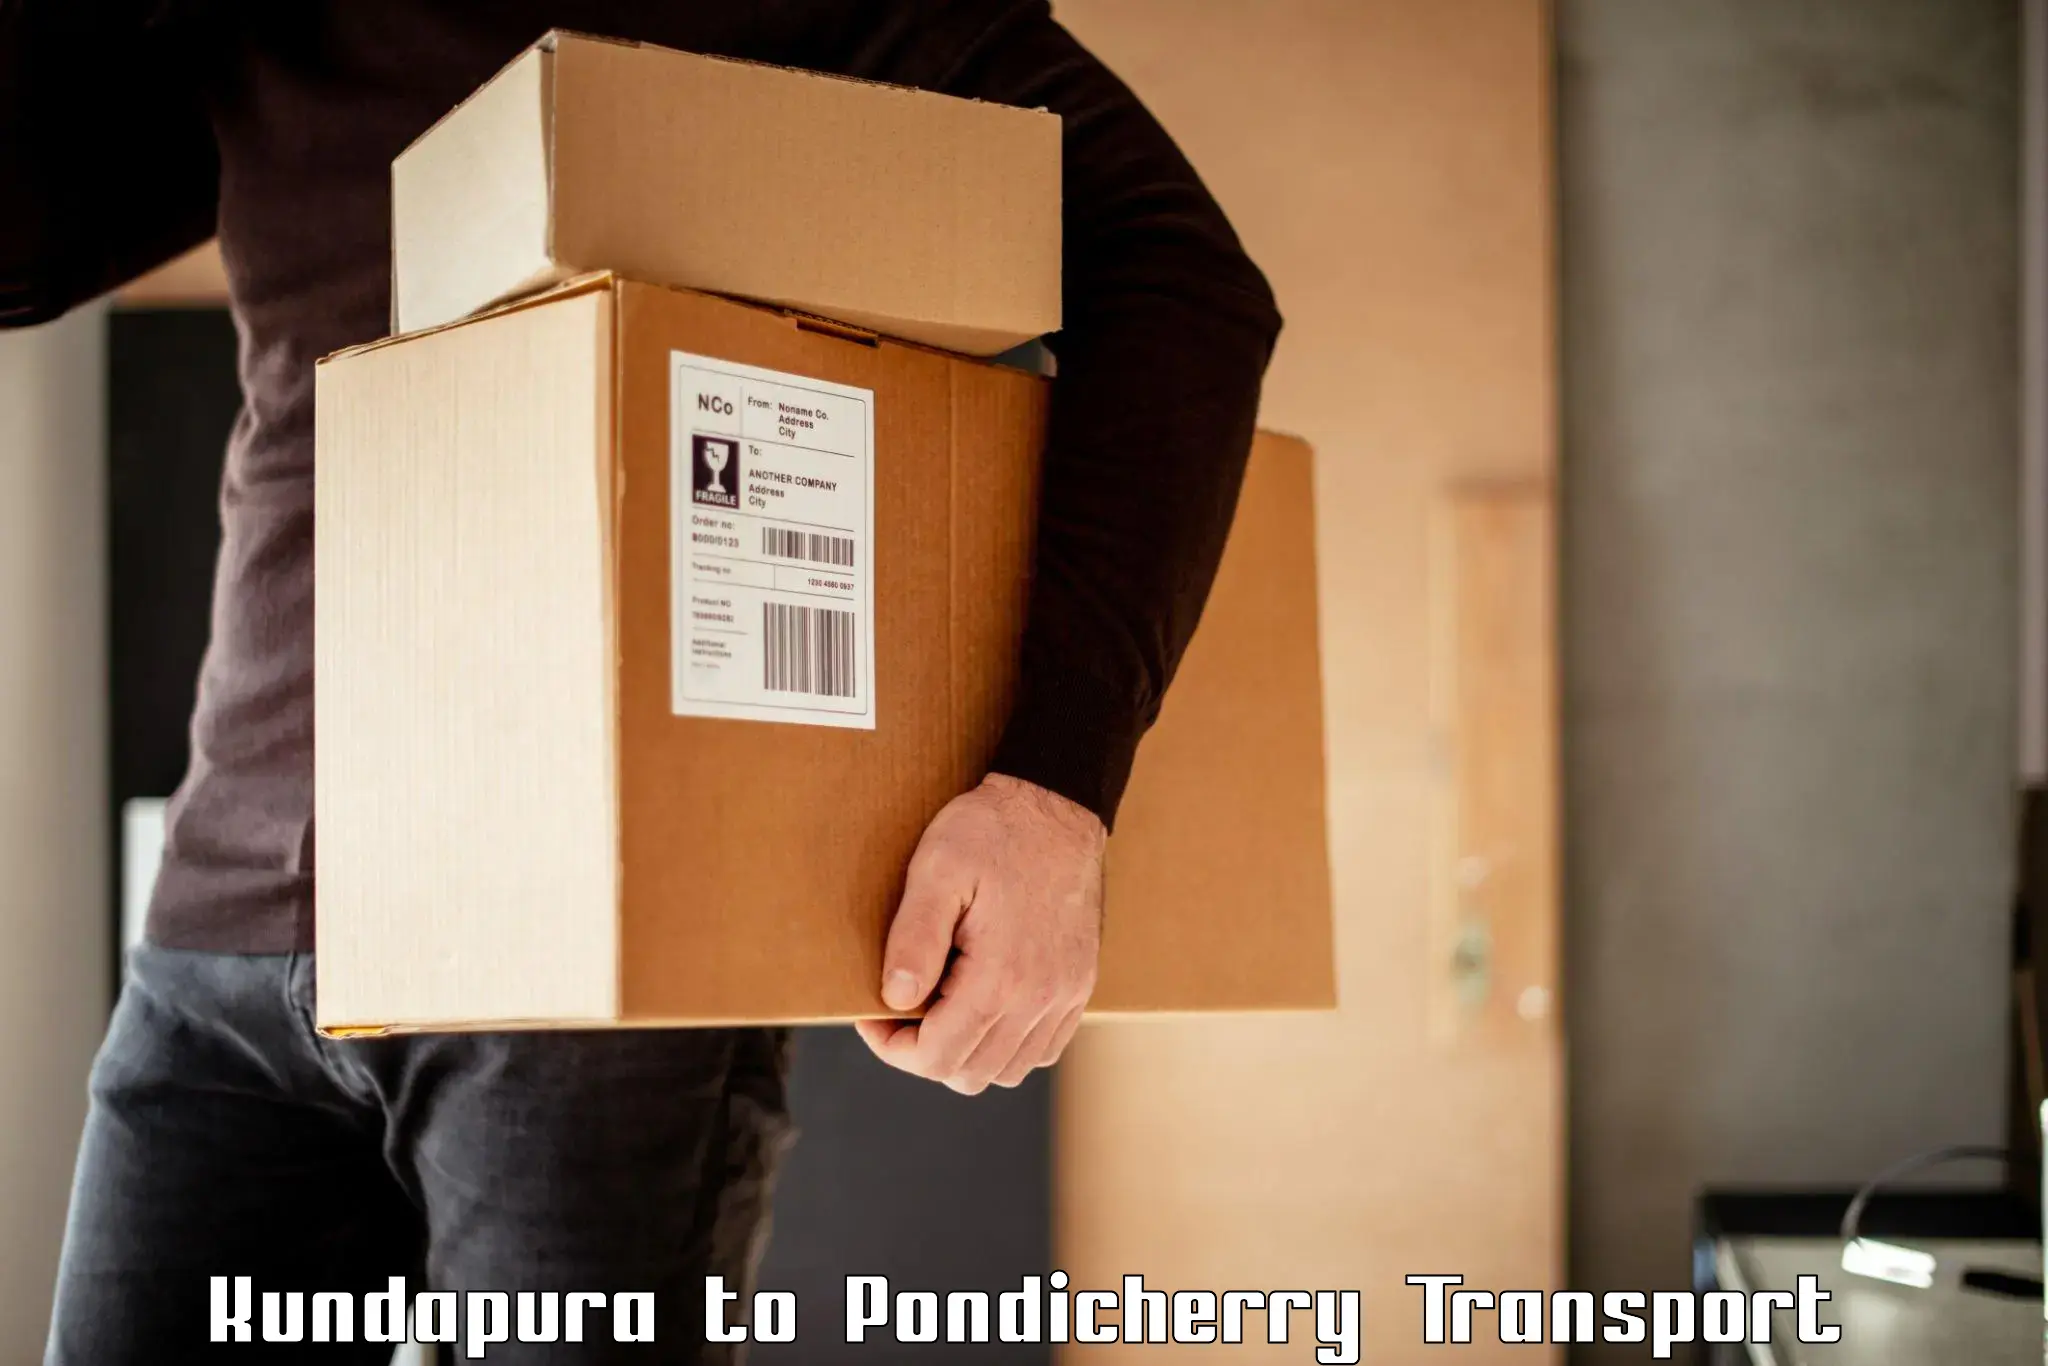 Transport in sharing Kundapura to Metttupalayam